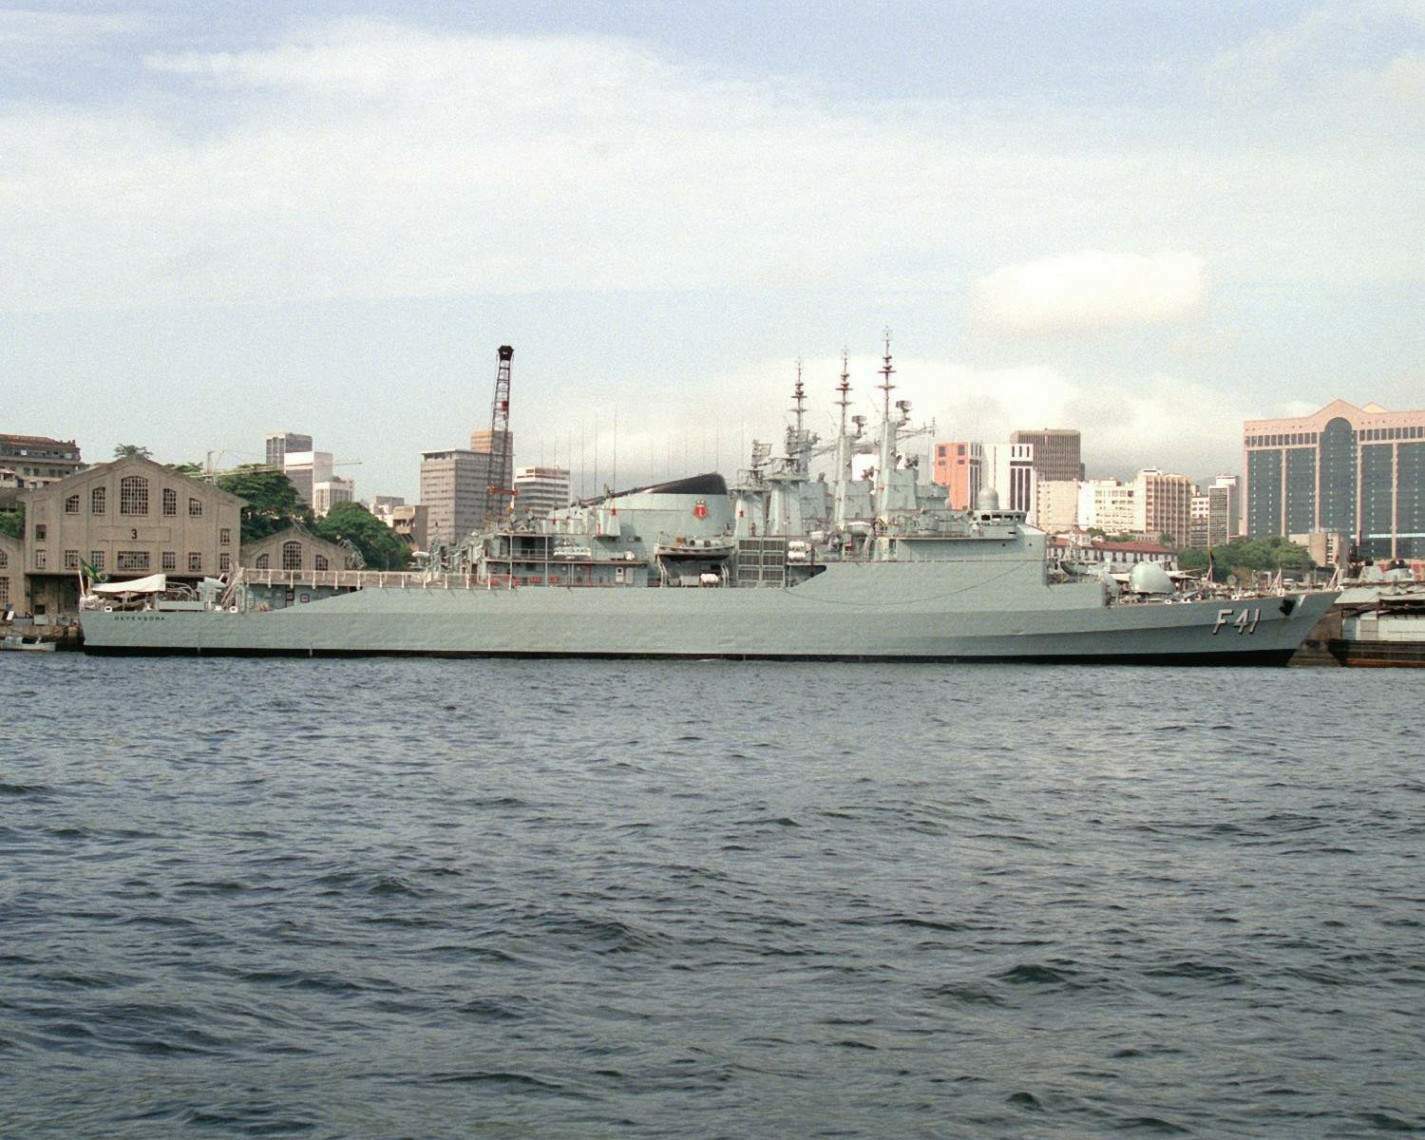 A Defensora atracada no Arsenal de Marinha do Rio de Janeiro, junto com outras fragatas da classe Niterói. (foto: Don S. Montgomery, USN) 